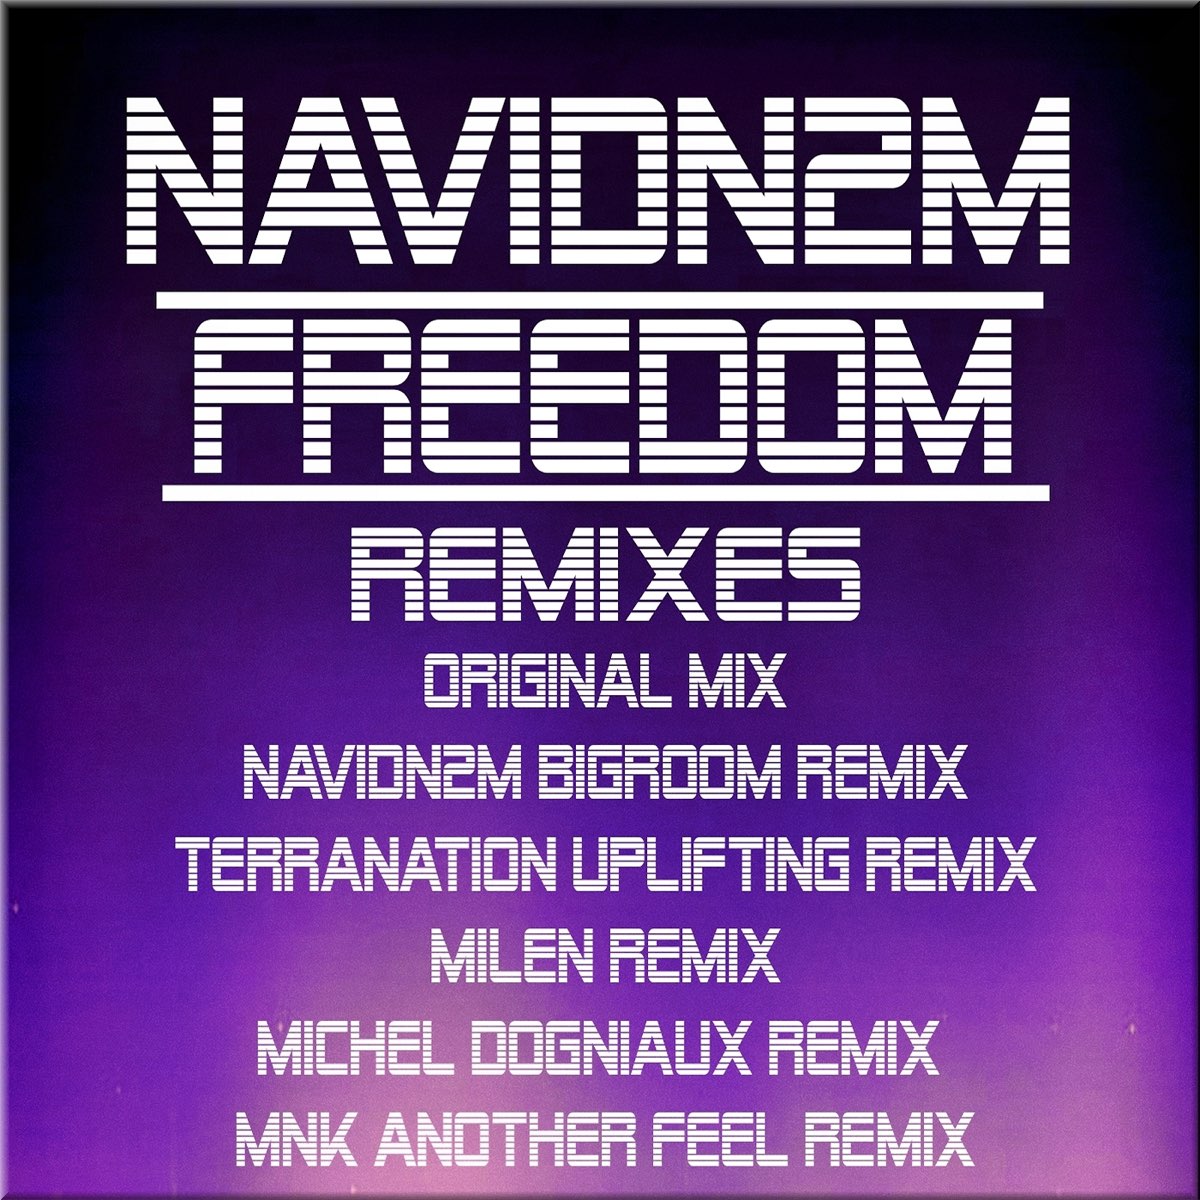 Feeling песня ремикс. Remix Freedom. 7 A.M. Remix.